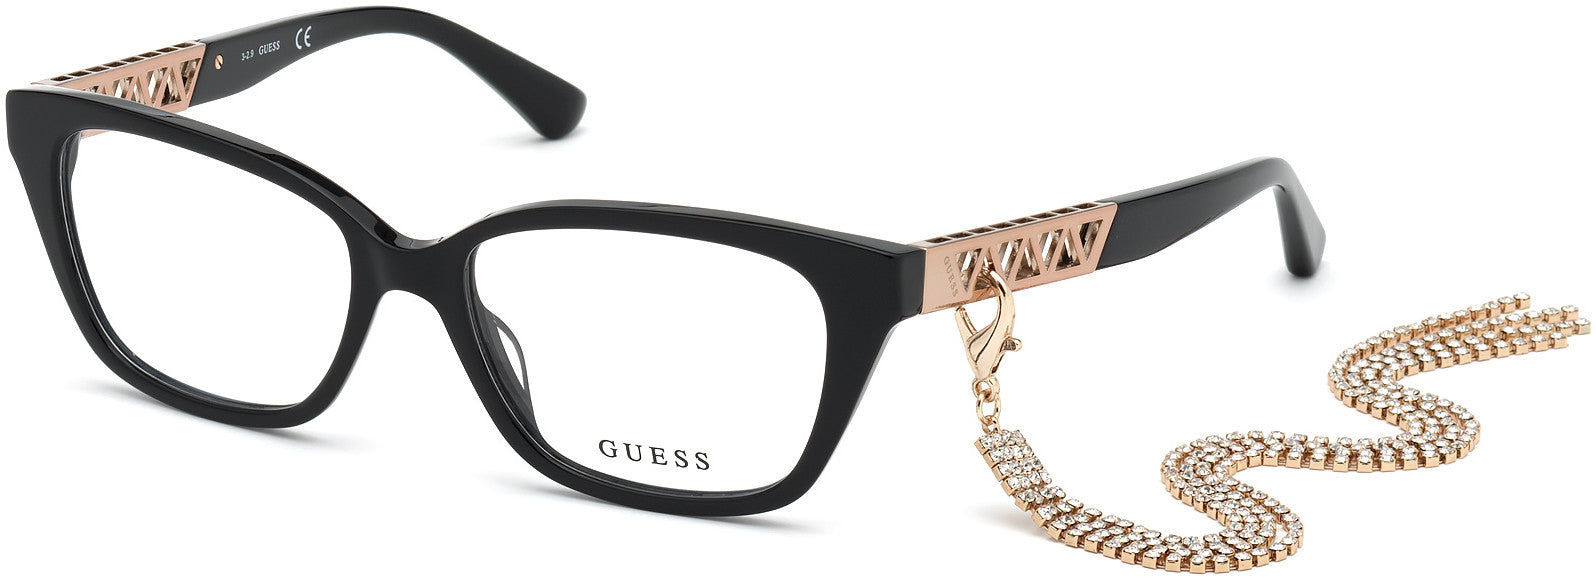 Guess GU2784 Square Eyeglasses 001-001 - Shiny Black